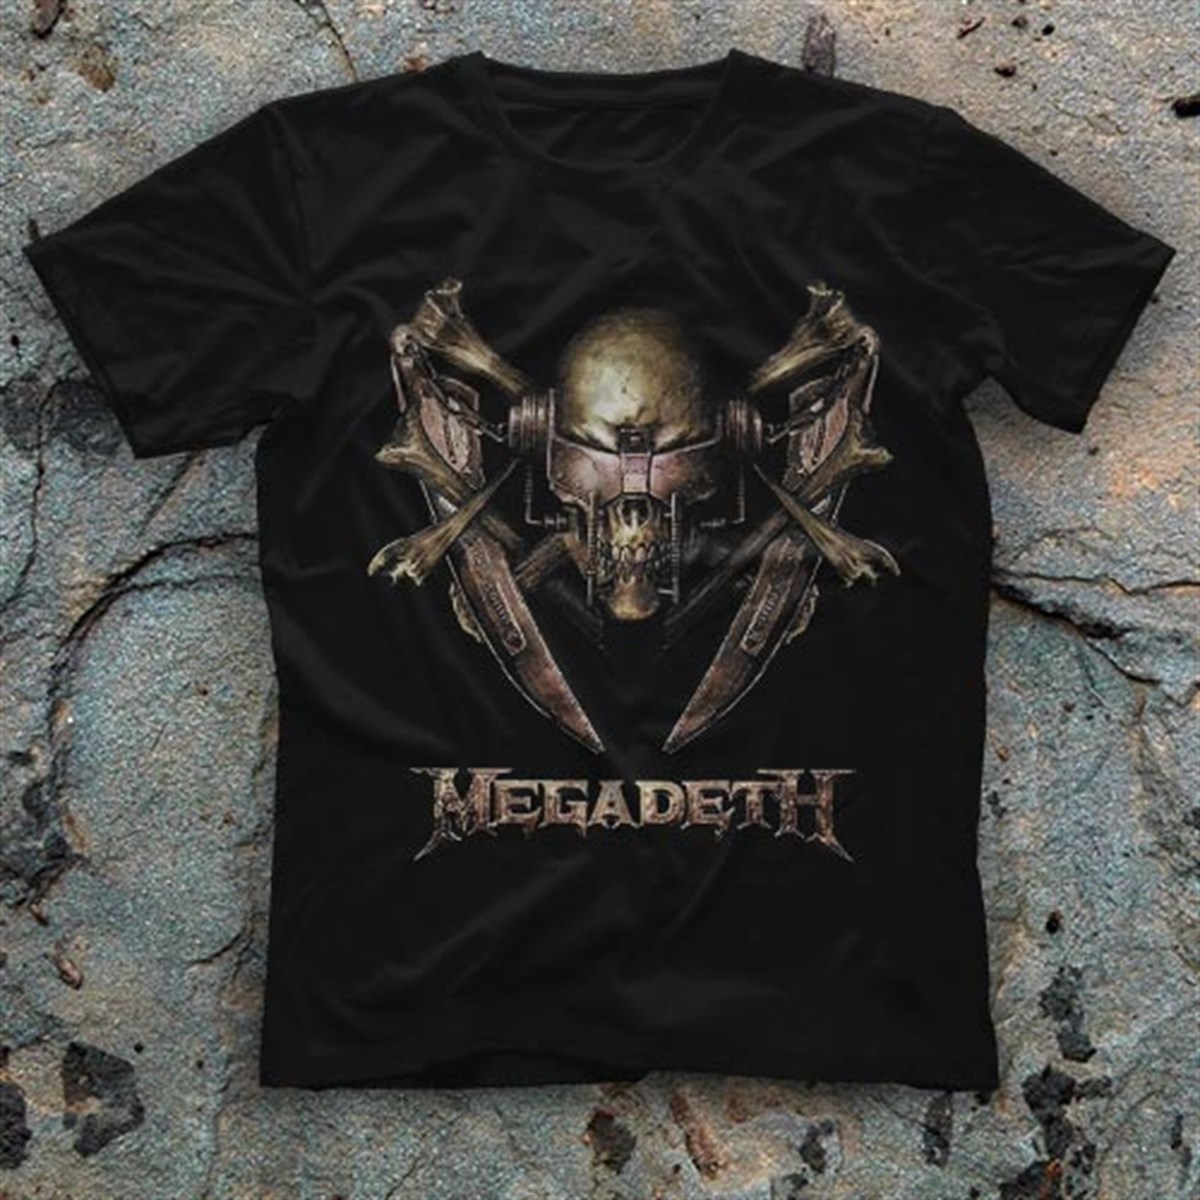 Megadeth T shirt, Music Band ,Unisex Tshirt  34/